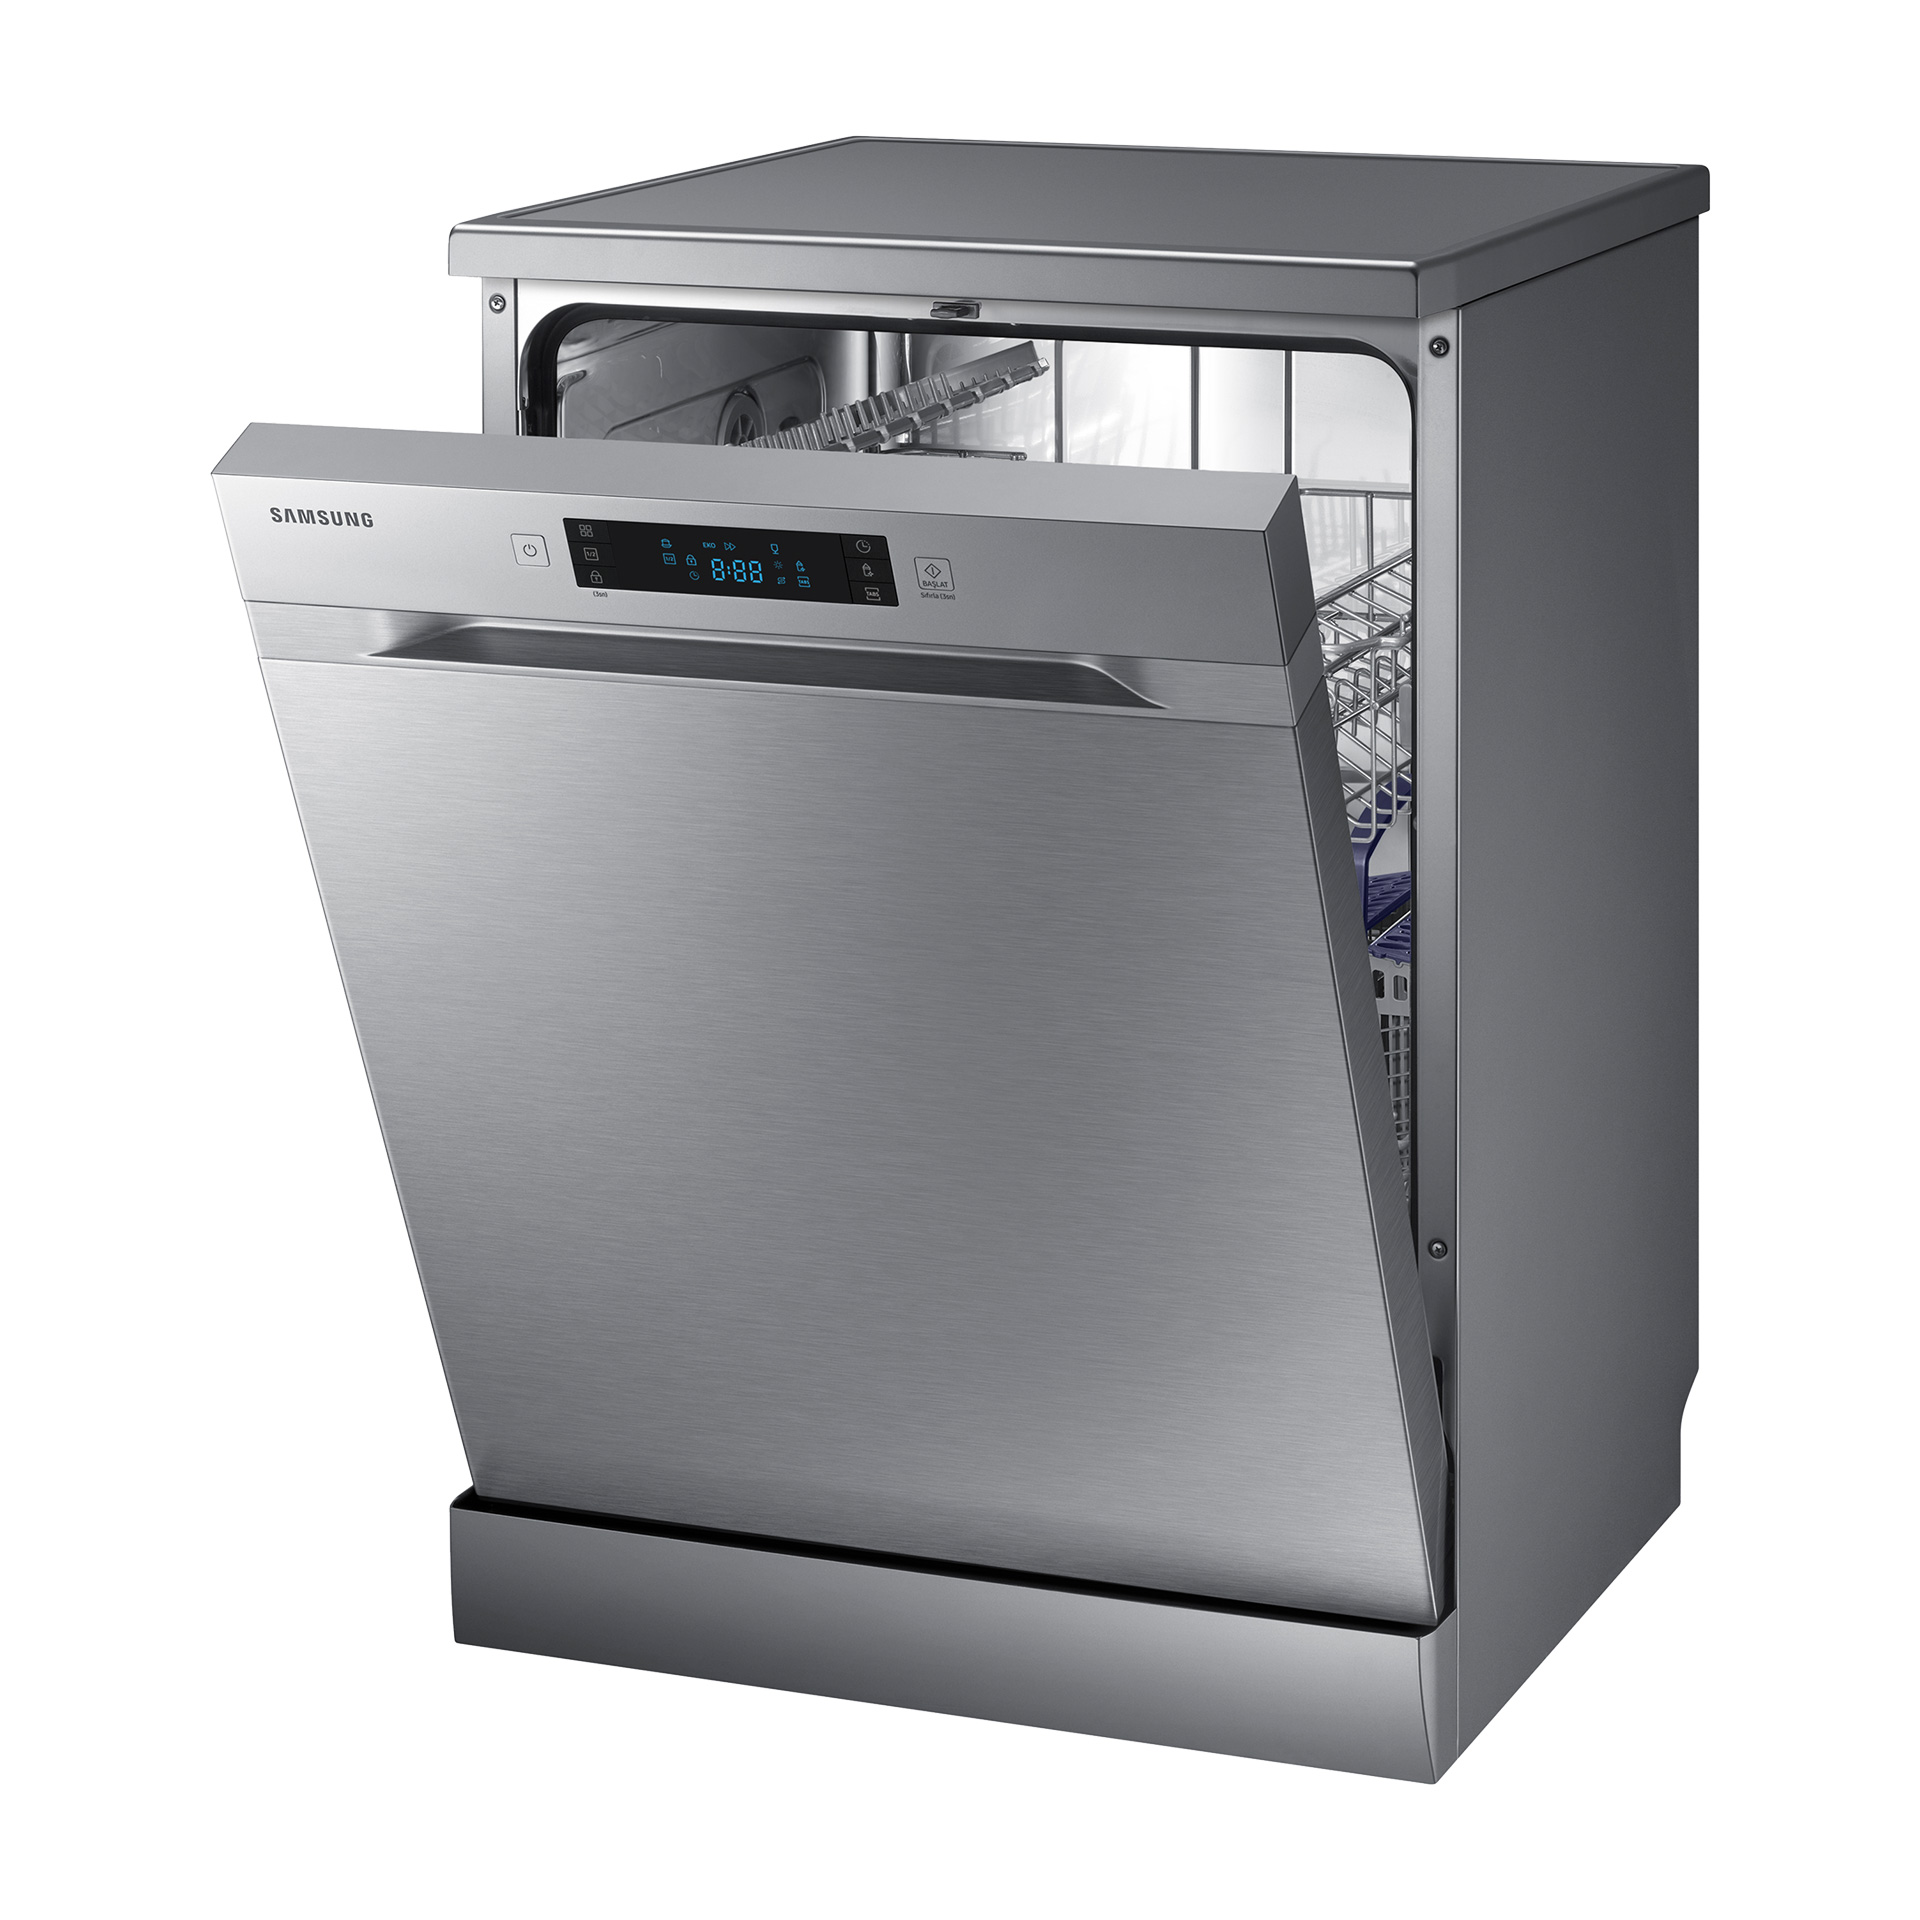 Куплю посудомоечную машину б у. Посудомоечная машина Samsung dw60m6072fs/tr. Посудомоечная машина Samsung dw60h5050fs. DW Samsung dw60m5062fs. Посудомоечная машина Samsung dw60j9960us.